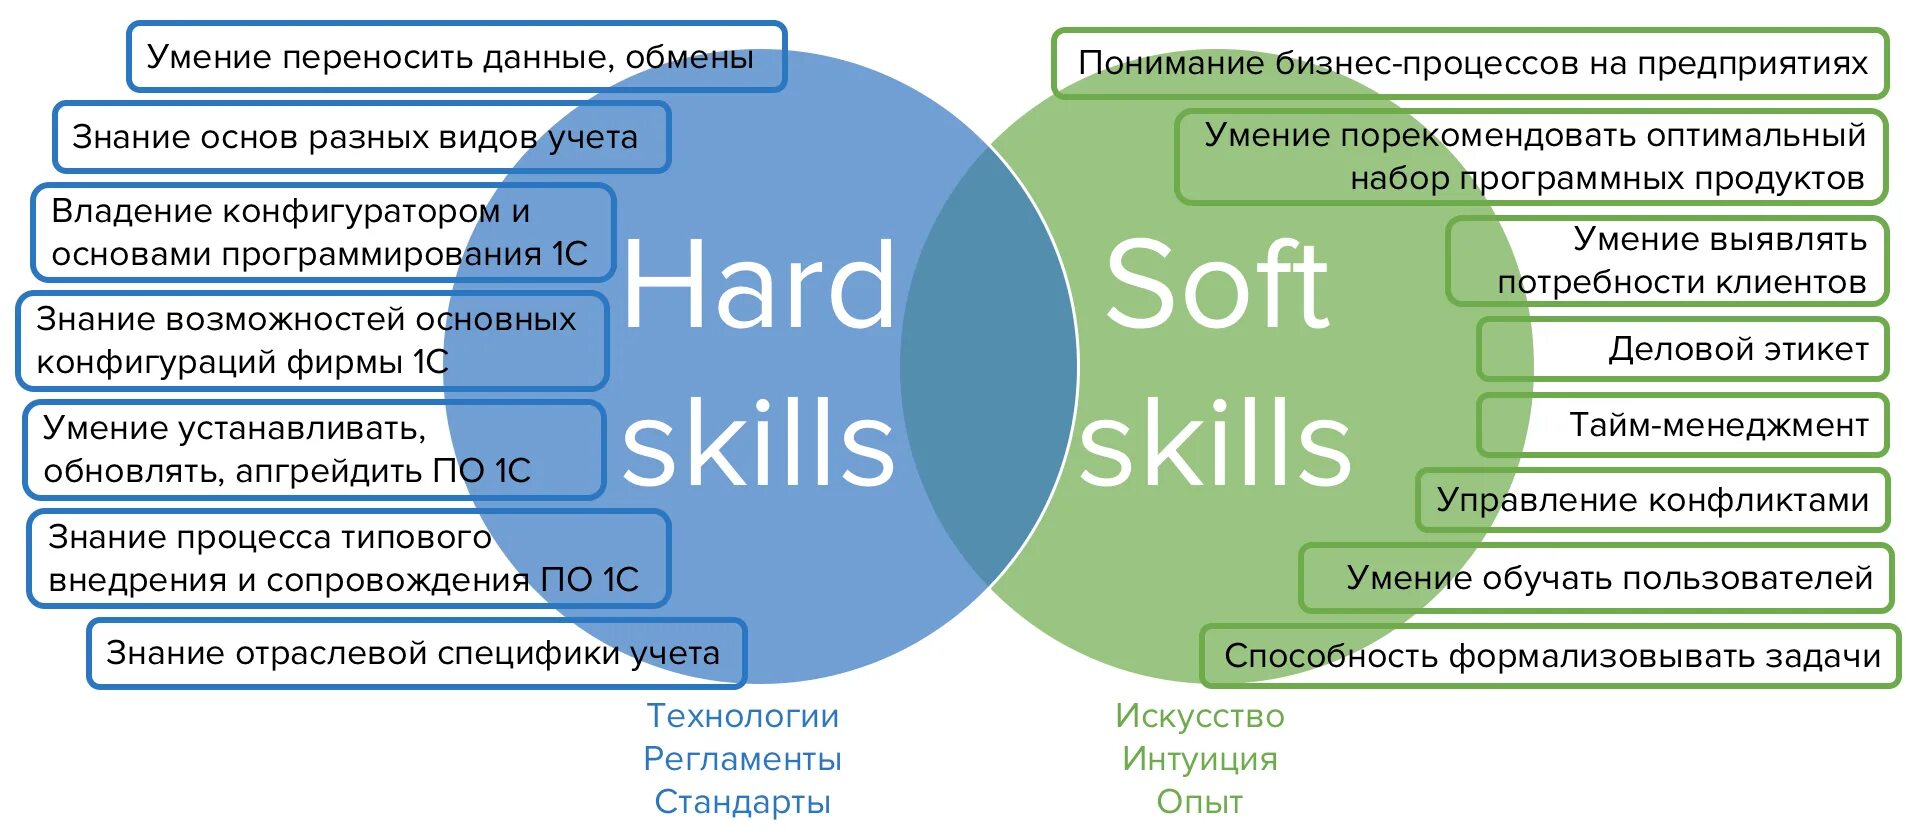 Статус владения. Hard skills и Soft skills. Навыки Хард и софт Скиллс. Компетенции педагога hard skills Soft skills. Софт и Хард компетенции.